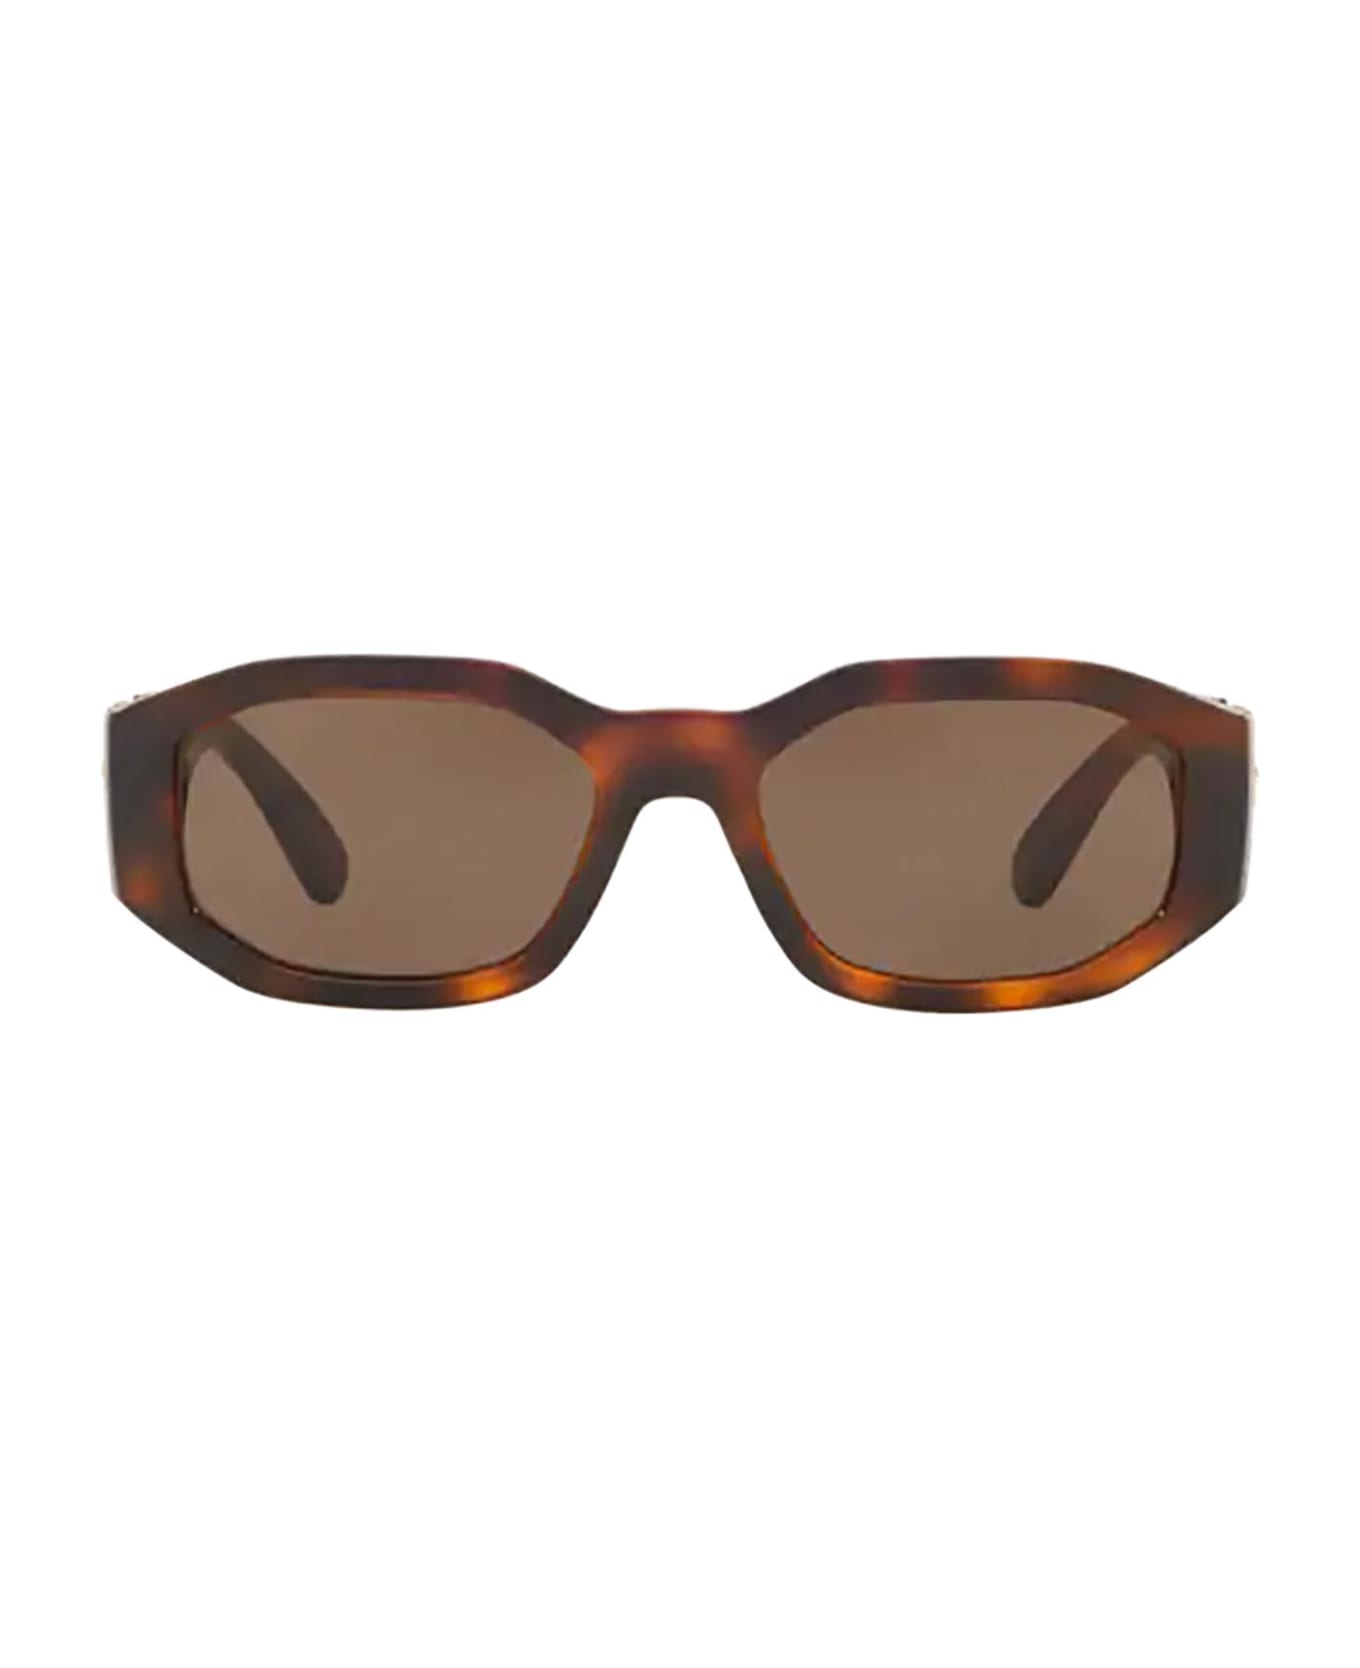 Versace Eyewear Ve4361 Havana Sunglasses - Havana